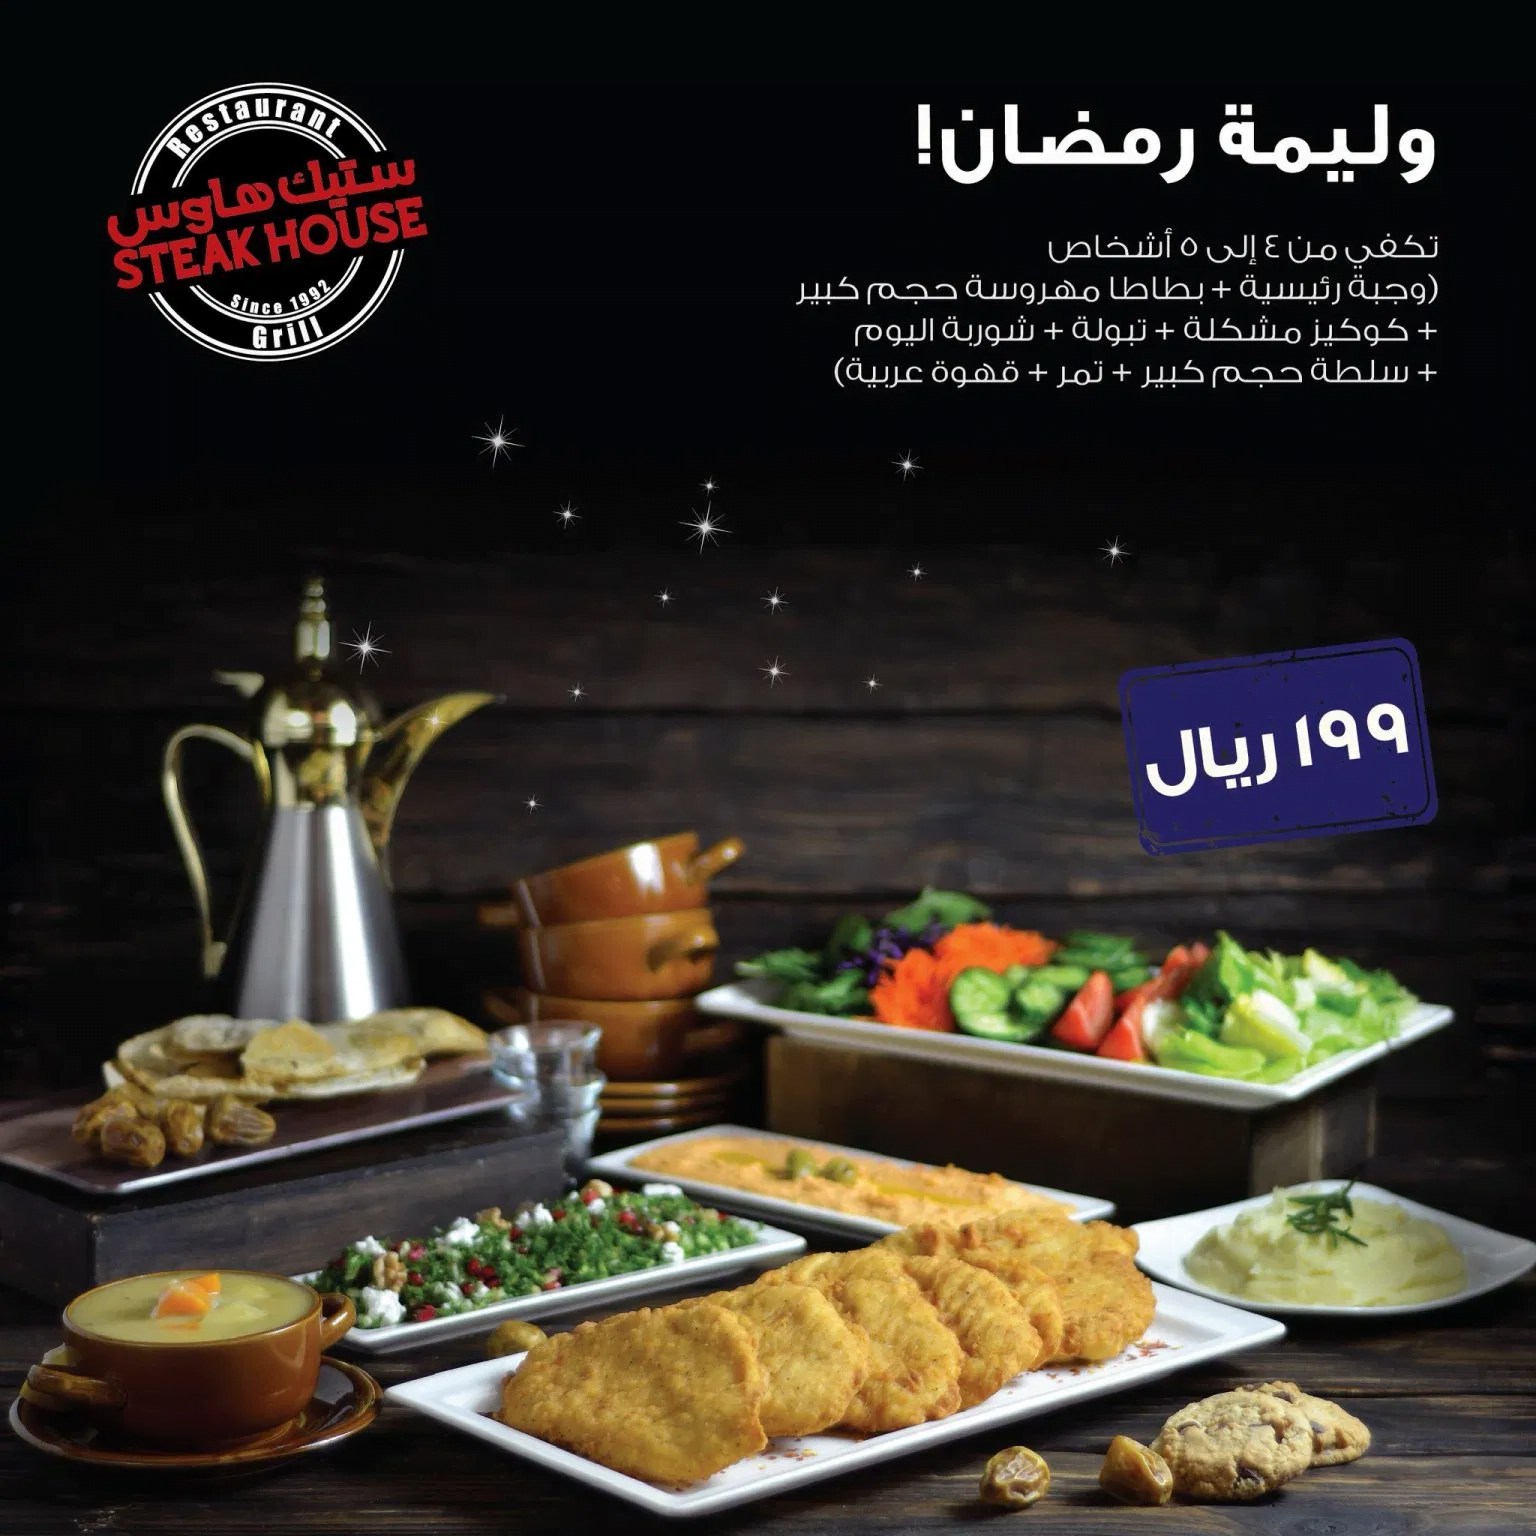 clipboard24 - عروض رمضان : عروض مطاعم السعودية لوجبات الافطار لشهر رمضان 2020 - 1441 محدثة يومياً